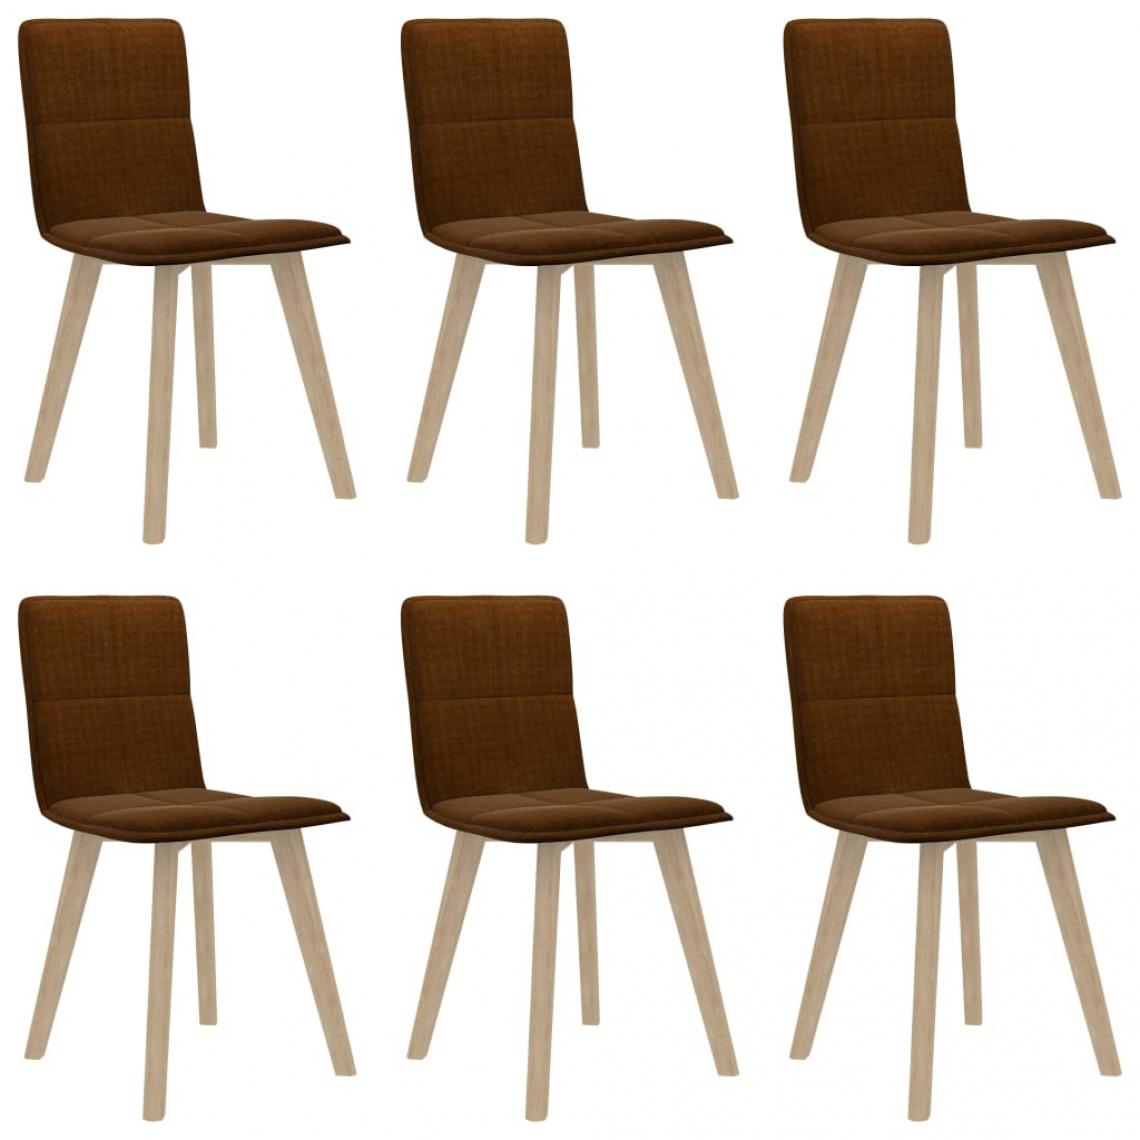 Decoshop26 - Lot de 6 chaises de salle à manger cuisine design moderne tissu marron CDS022556 - Chaises